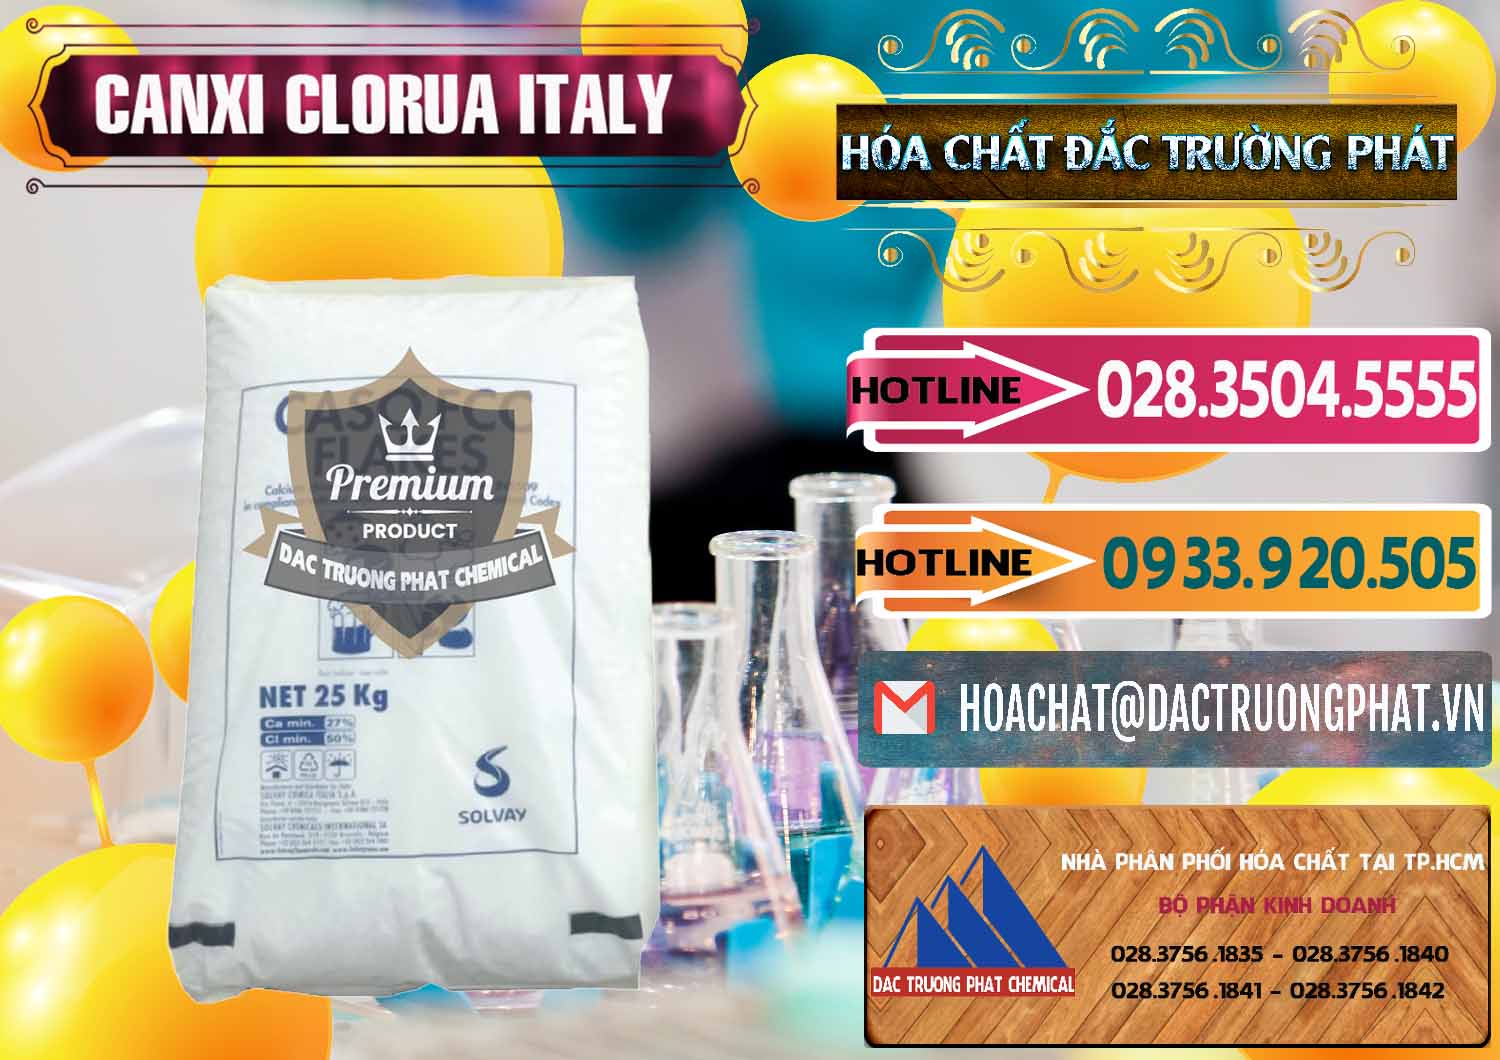 Cty kinh doanh _ bán CaCl2 – Canxi Clorua Food Grade Ý Italy - 0435 - Công ty chuyên cung cấp - kinh doanh hóa chất tại TP.HCM - dactruongphat.vn